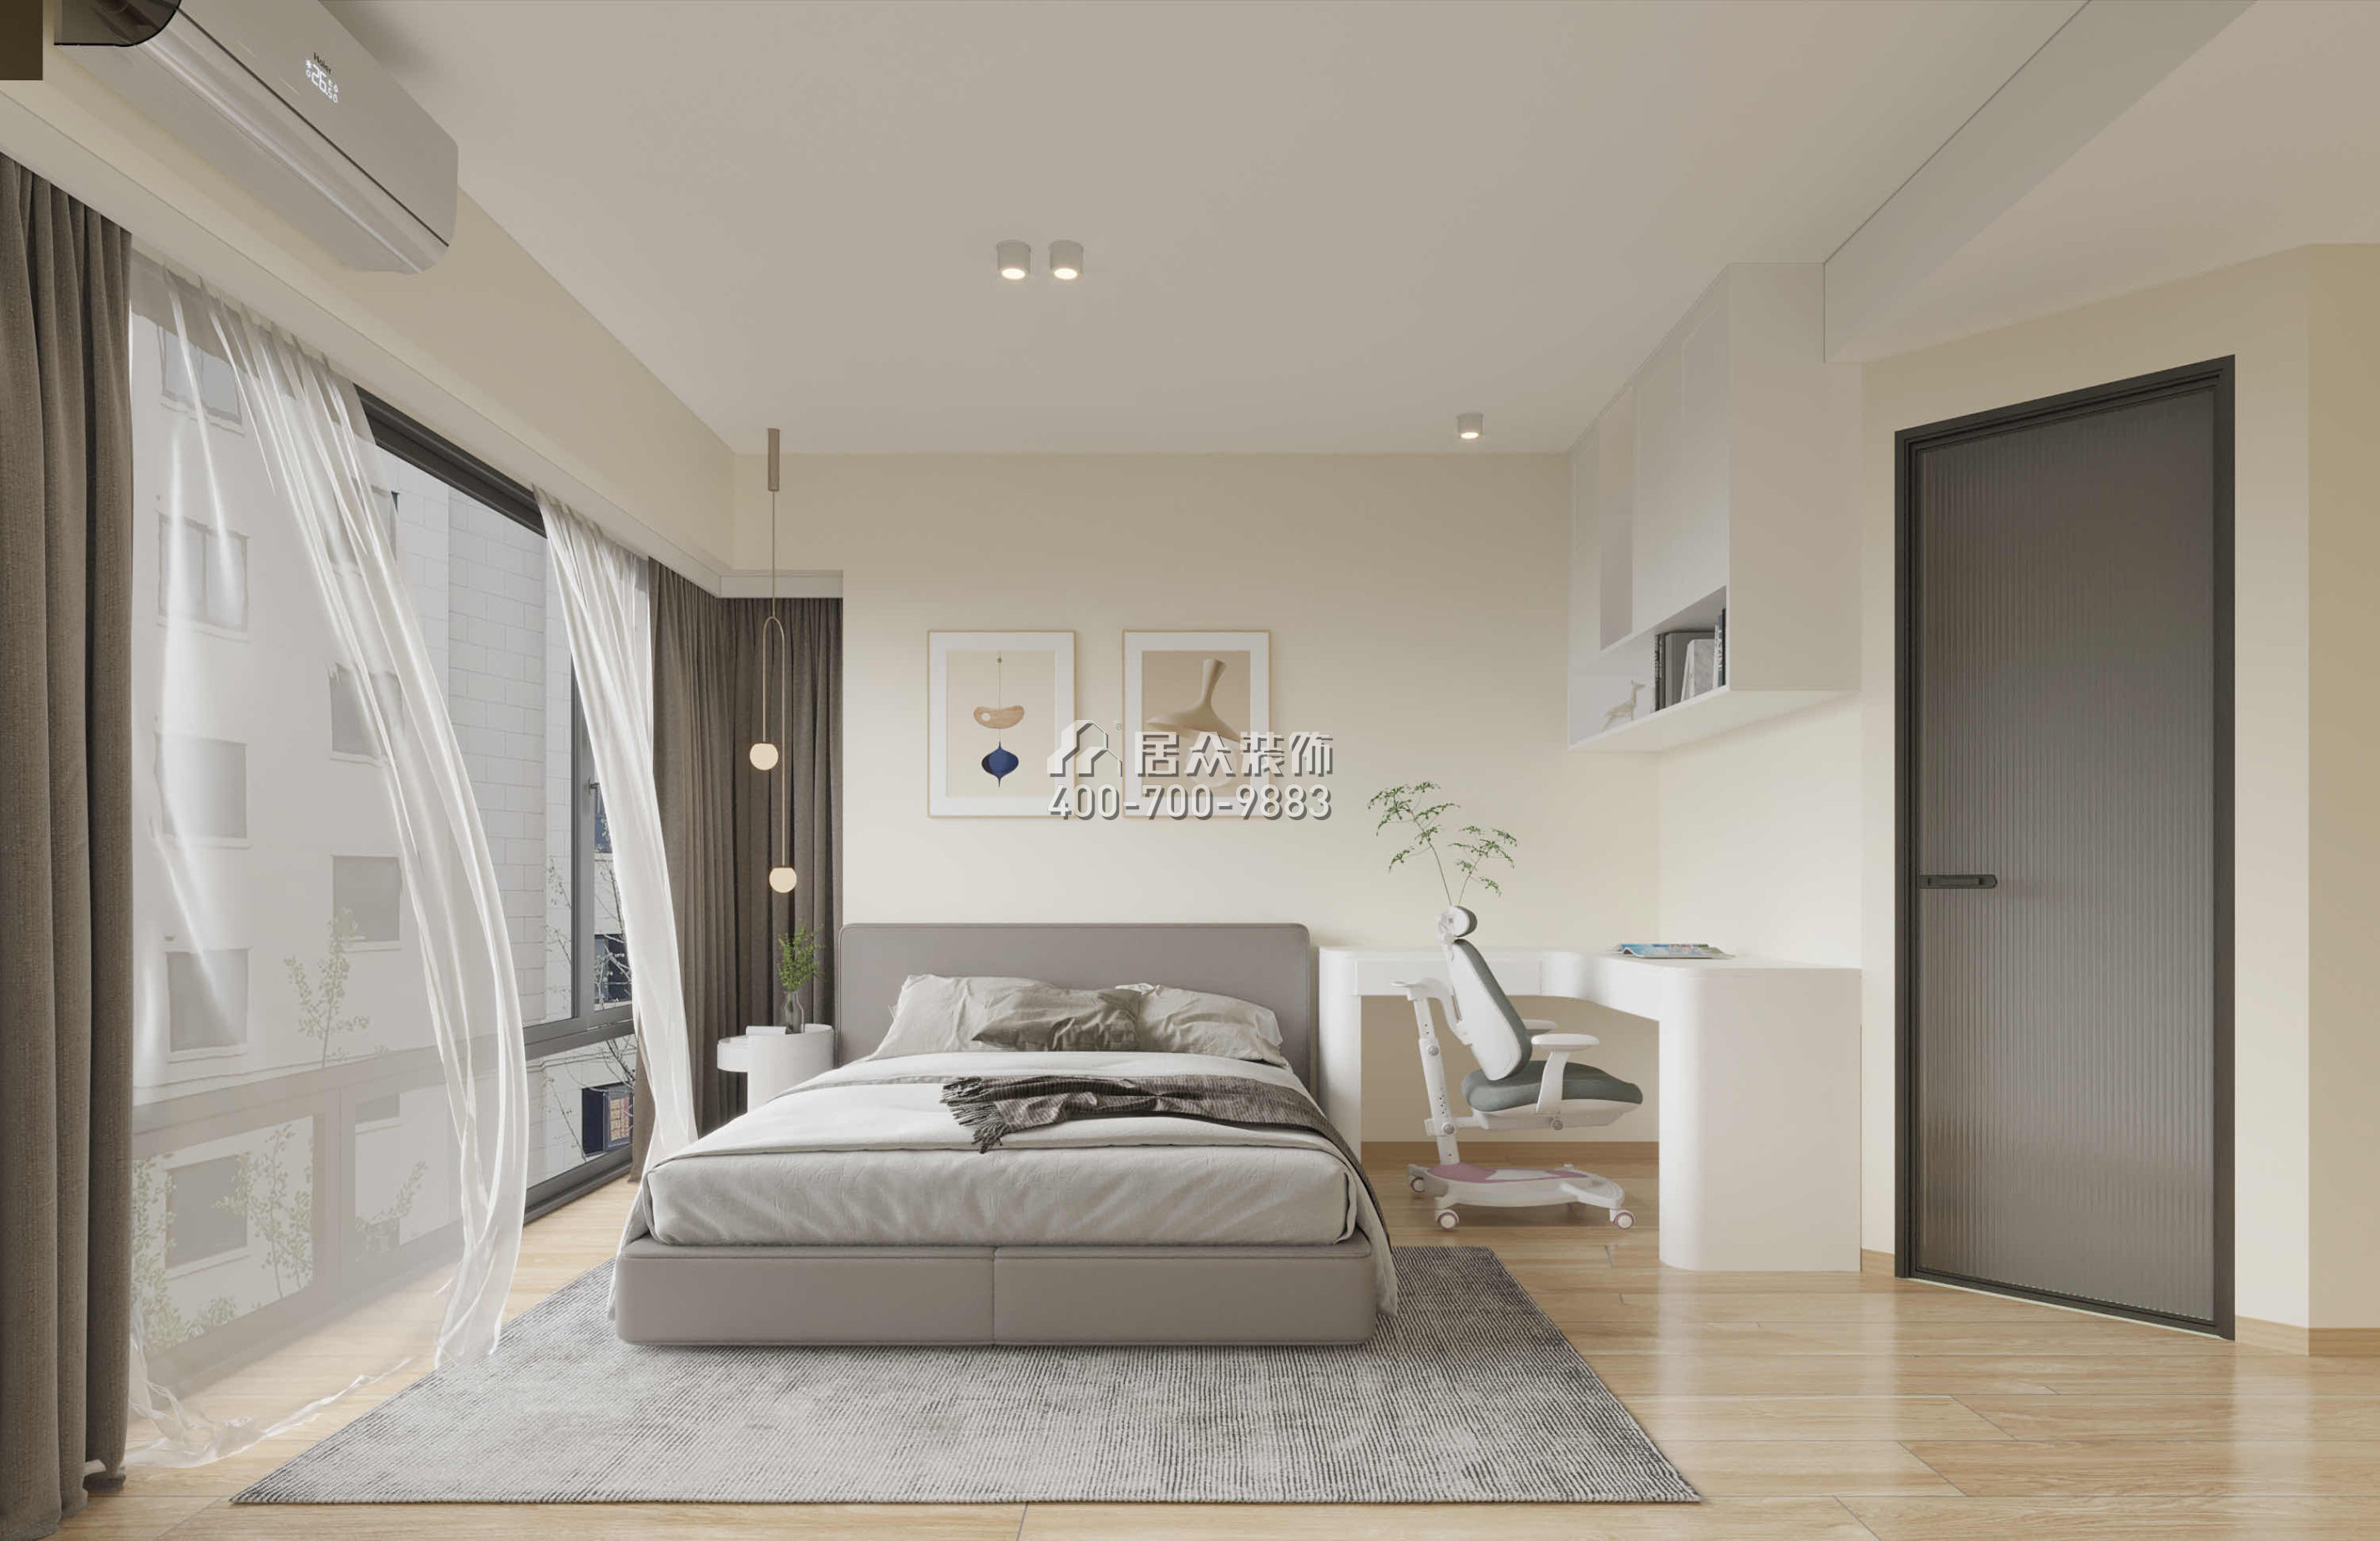 丽晶国际114平方米现代简约风格平层户型卧室装修效果图